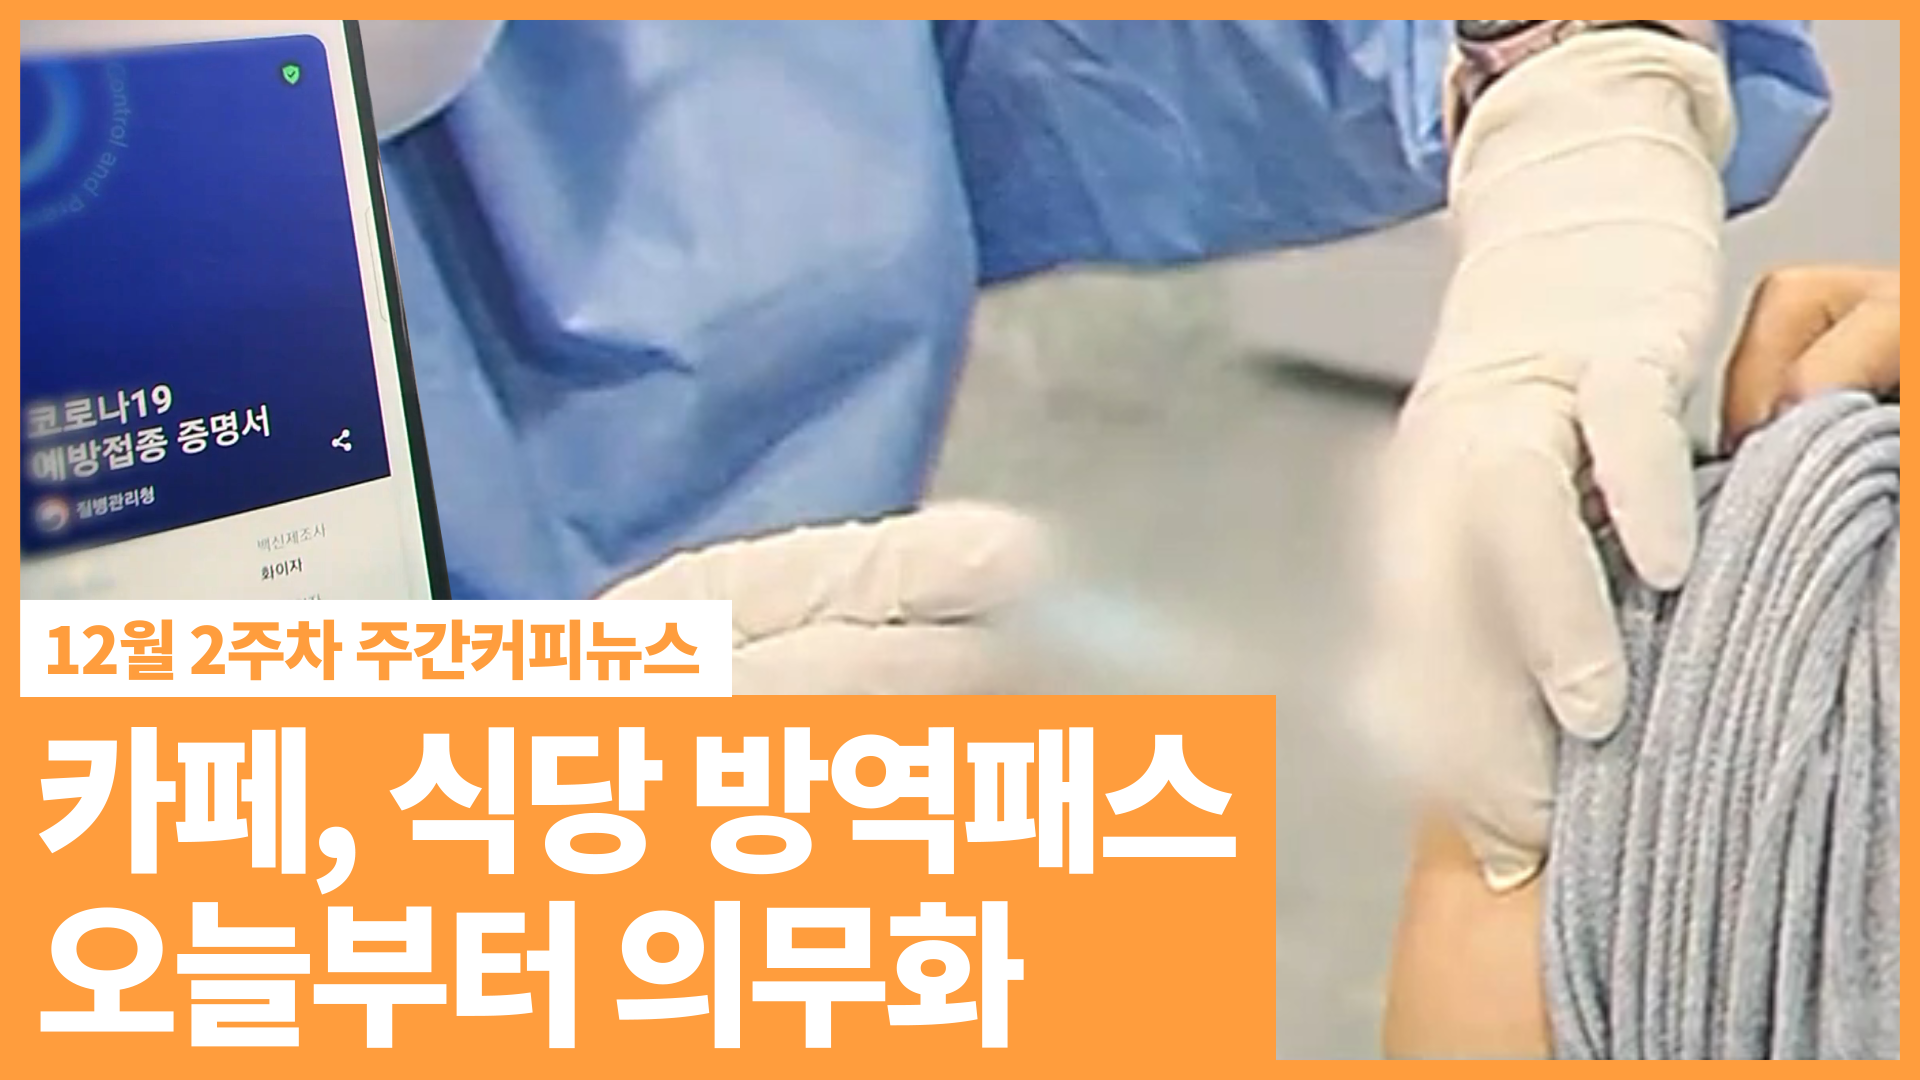 카페, 식당 '방역패스' 의무화. 어기면 과태료 | 12월 2주차 주간커피뉴스